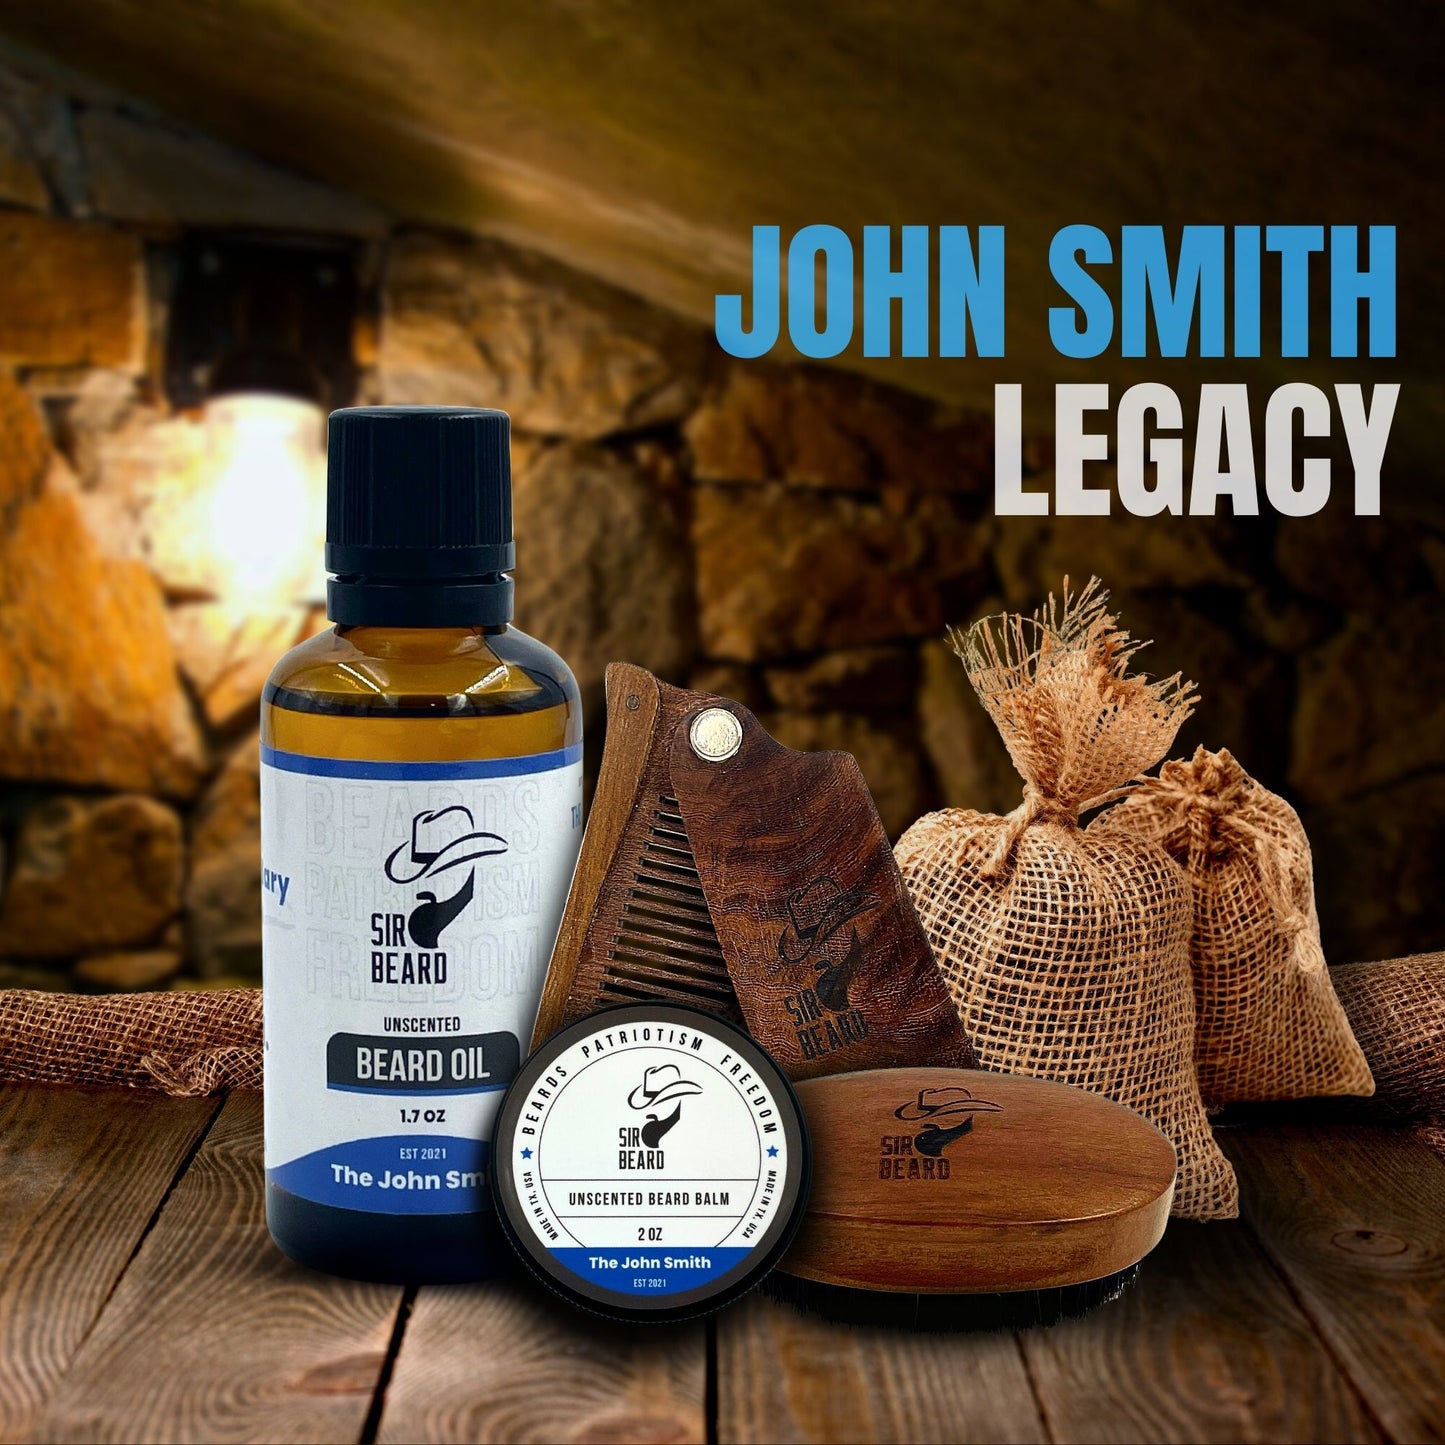 The John Smith Legacy